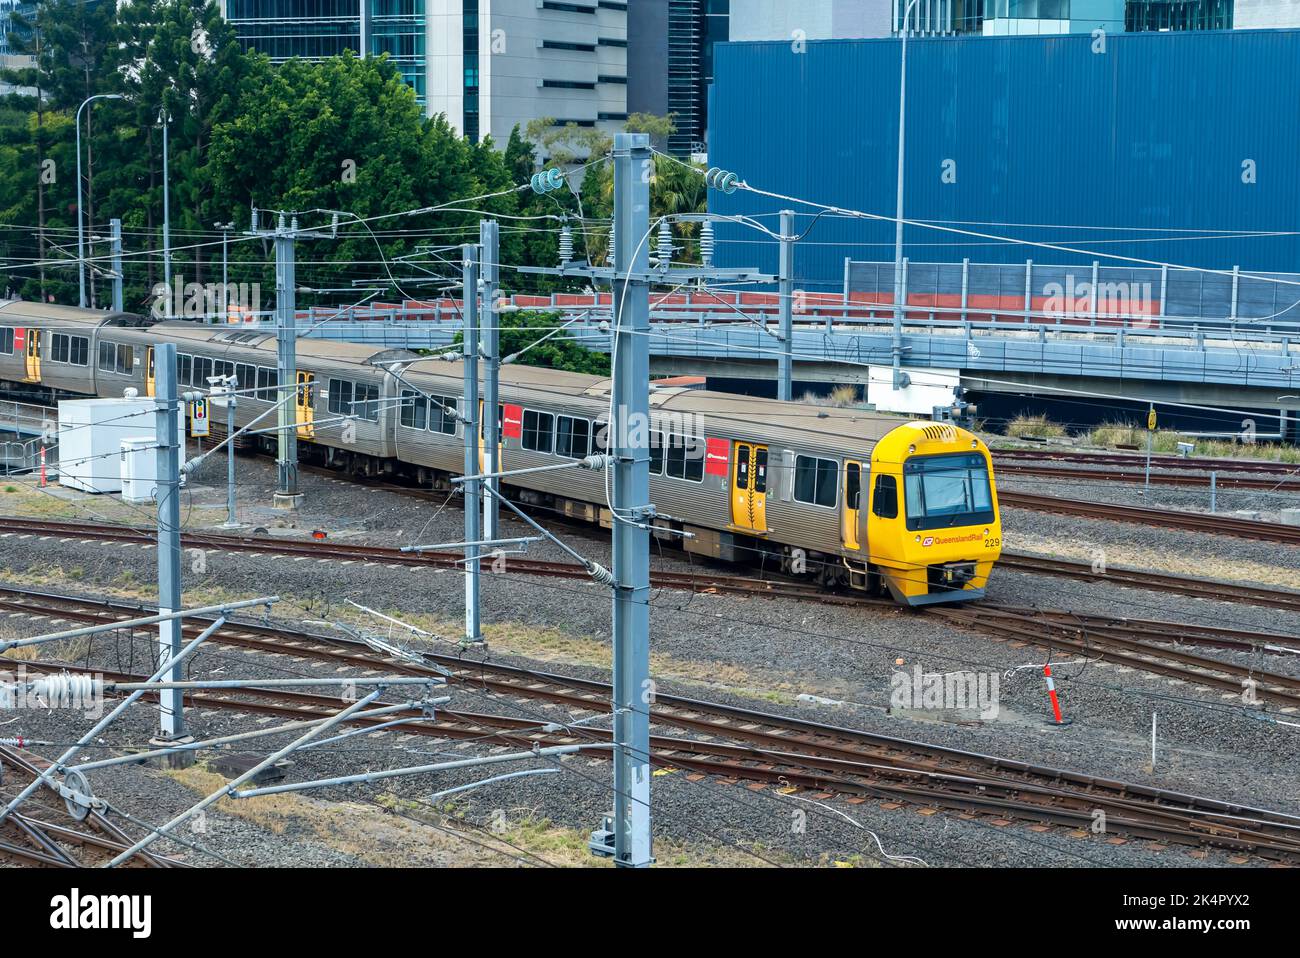 Brisbane, Australia - Aug 5, 2022: Close-up view of passenger train in Brisbane, Australia Stock Photo